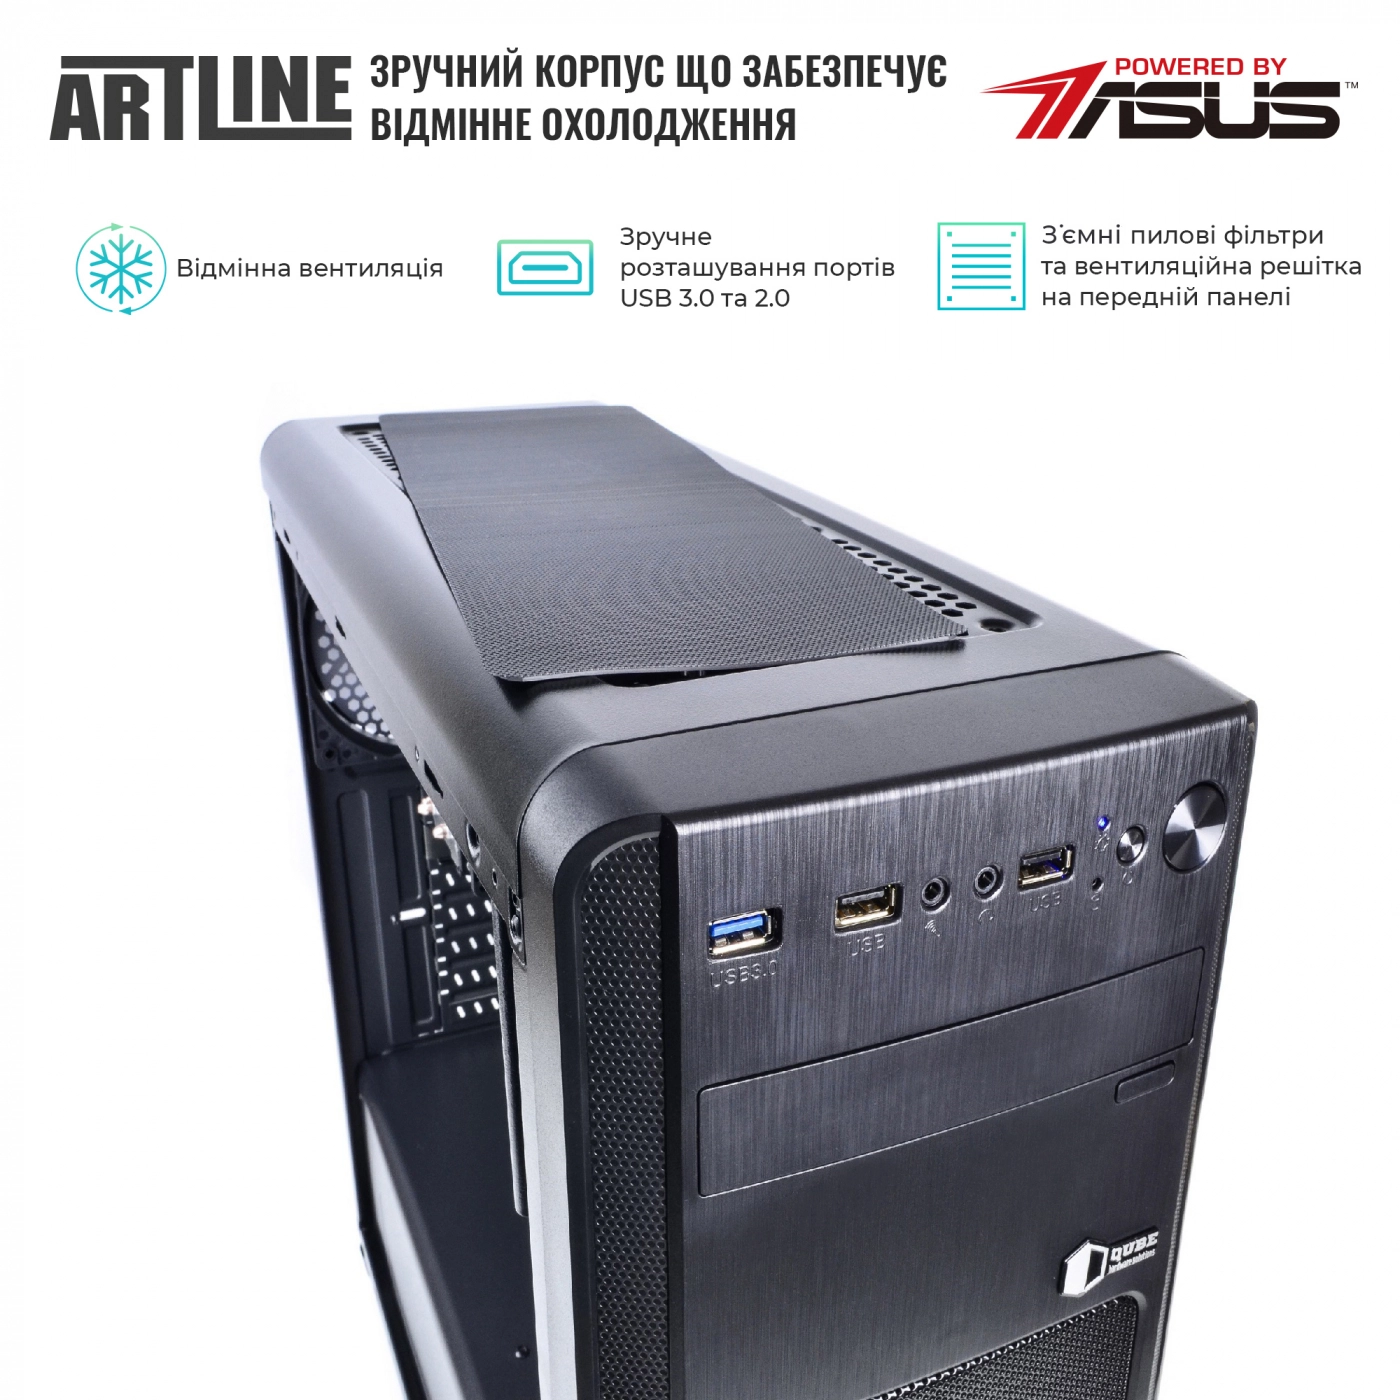 Купить Сервер ARTLINE Business T25v36 - фото 2